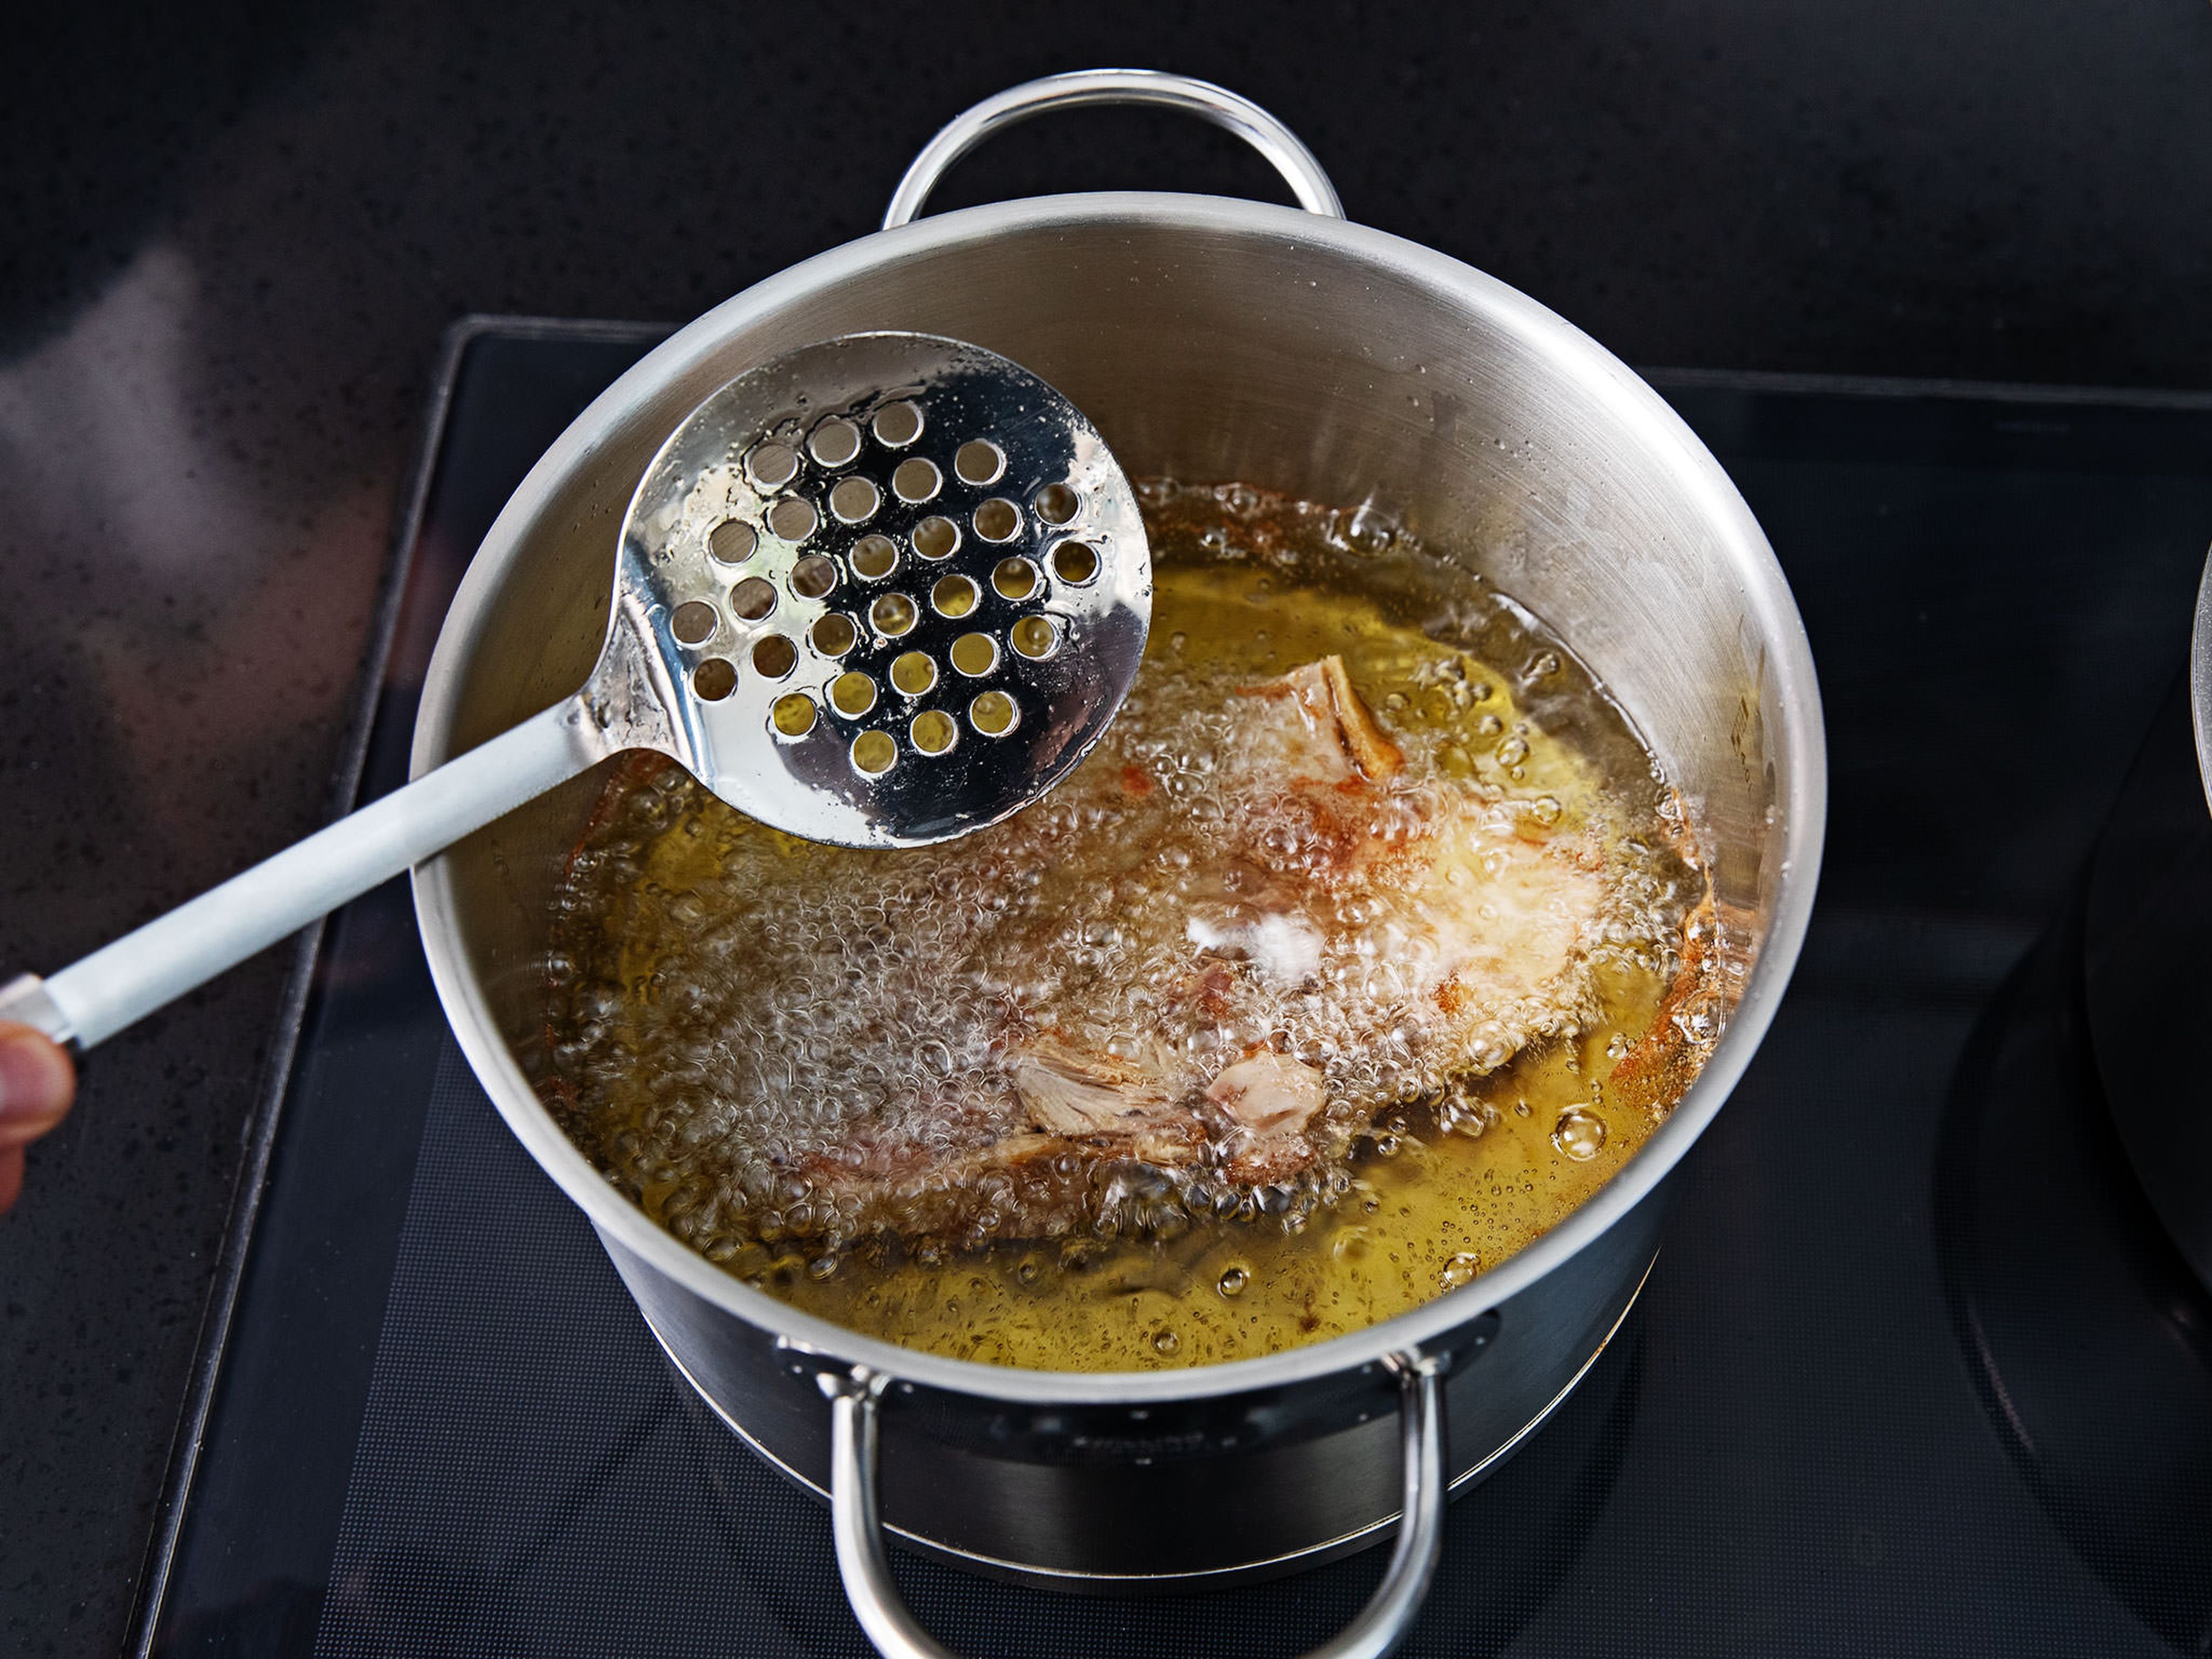 Die gegarte, leicht abgekühlte Ente in zwei Hälften schneiden und die Wirbelsäule entfernen. Die Brühe in einen sauberen Topf durch ein Sieb abgießen und über hoher Hitze kochen, bis sie zu einer Soße eindickt. Einen weiteren Topf mit Öl erhitzen und die Entenhälften darin anbraten, bis sie kross sind. Anschließend auf einem Teller mit Küchenpapier abtropfen lassen.